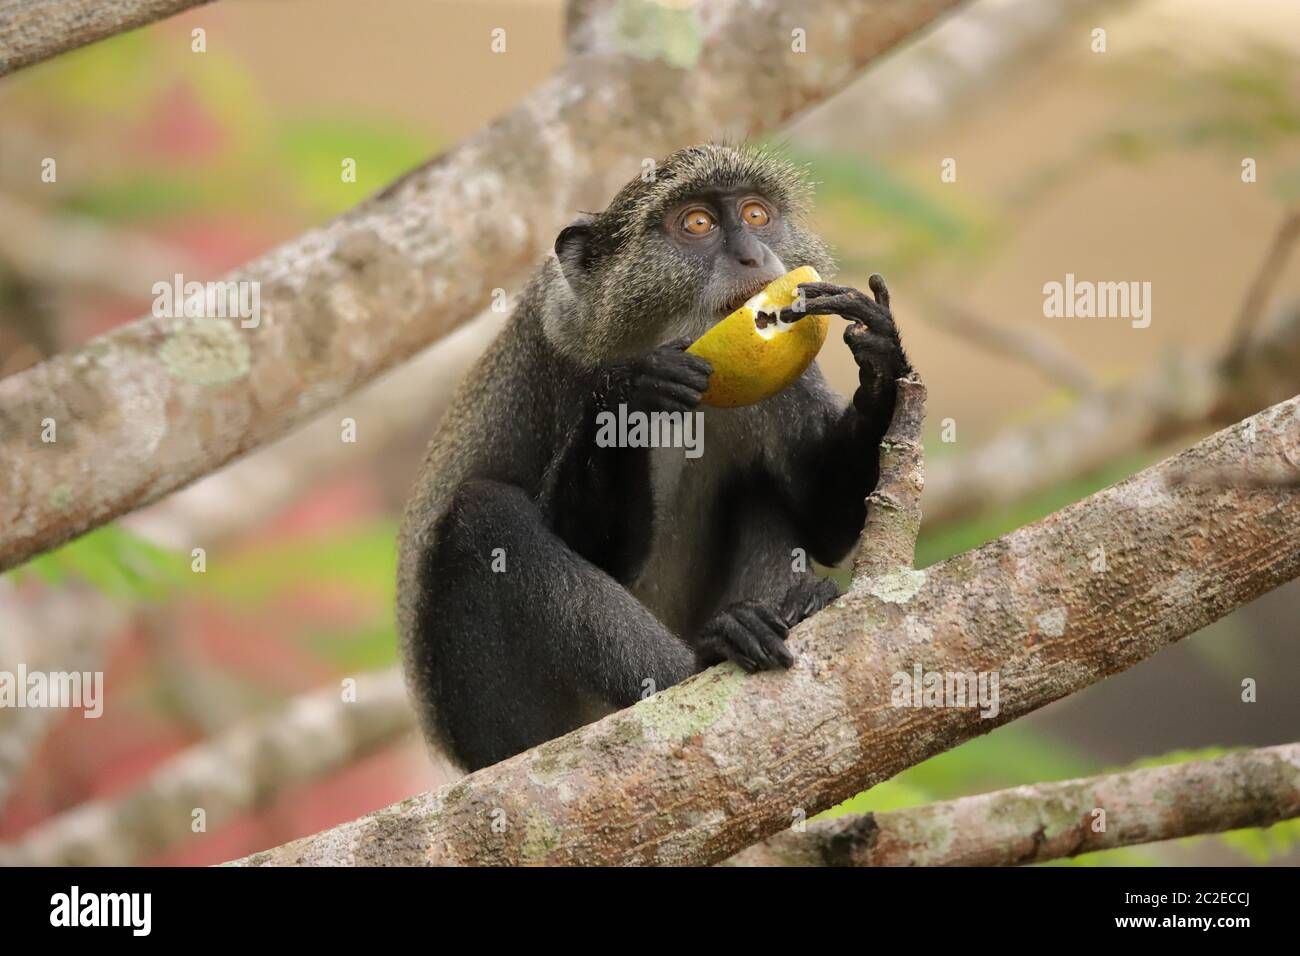 La scimmia di Sykes tiene un frutto con entrambe le mani per mangiare. Foto Stock